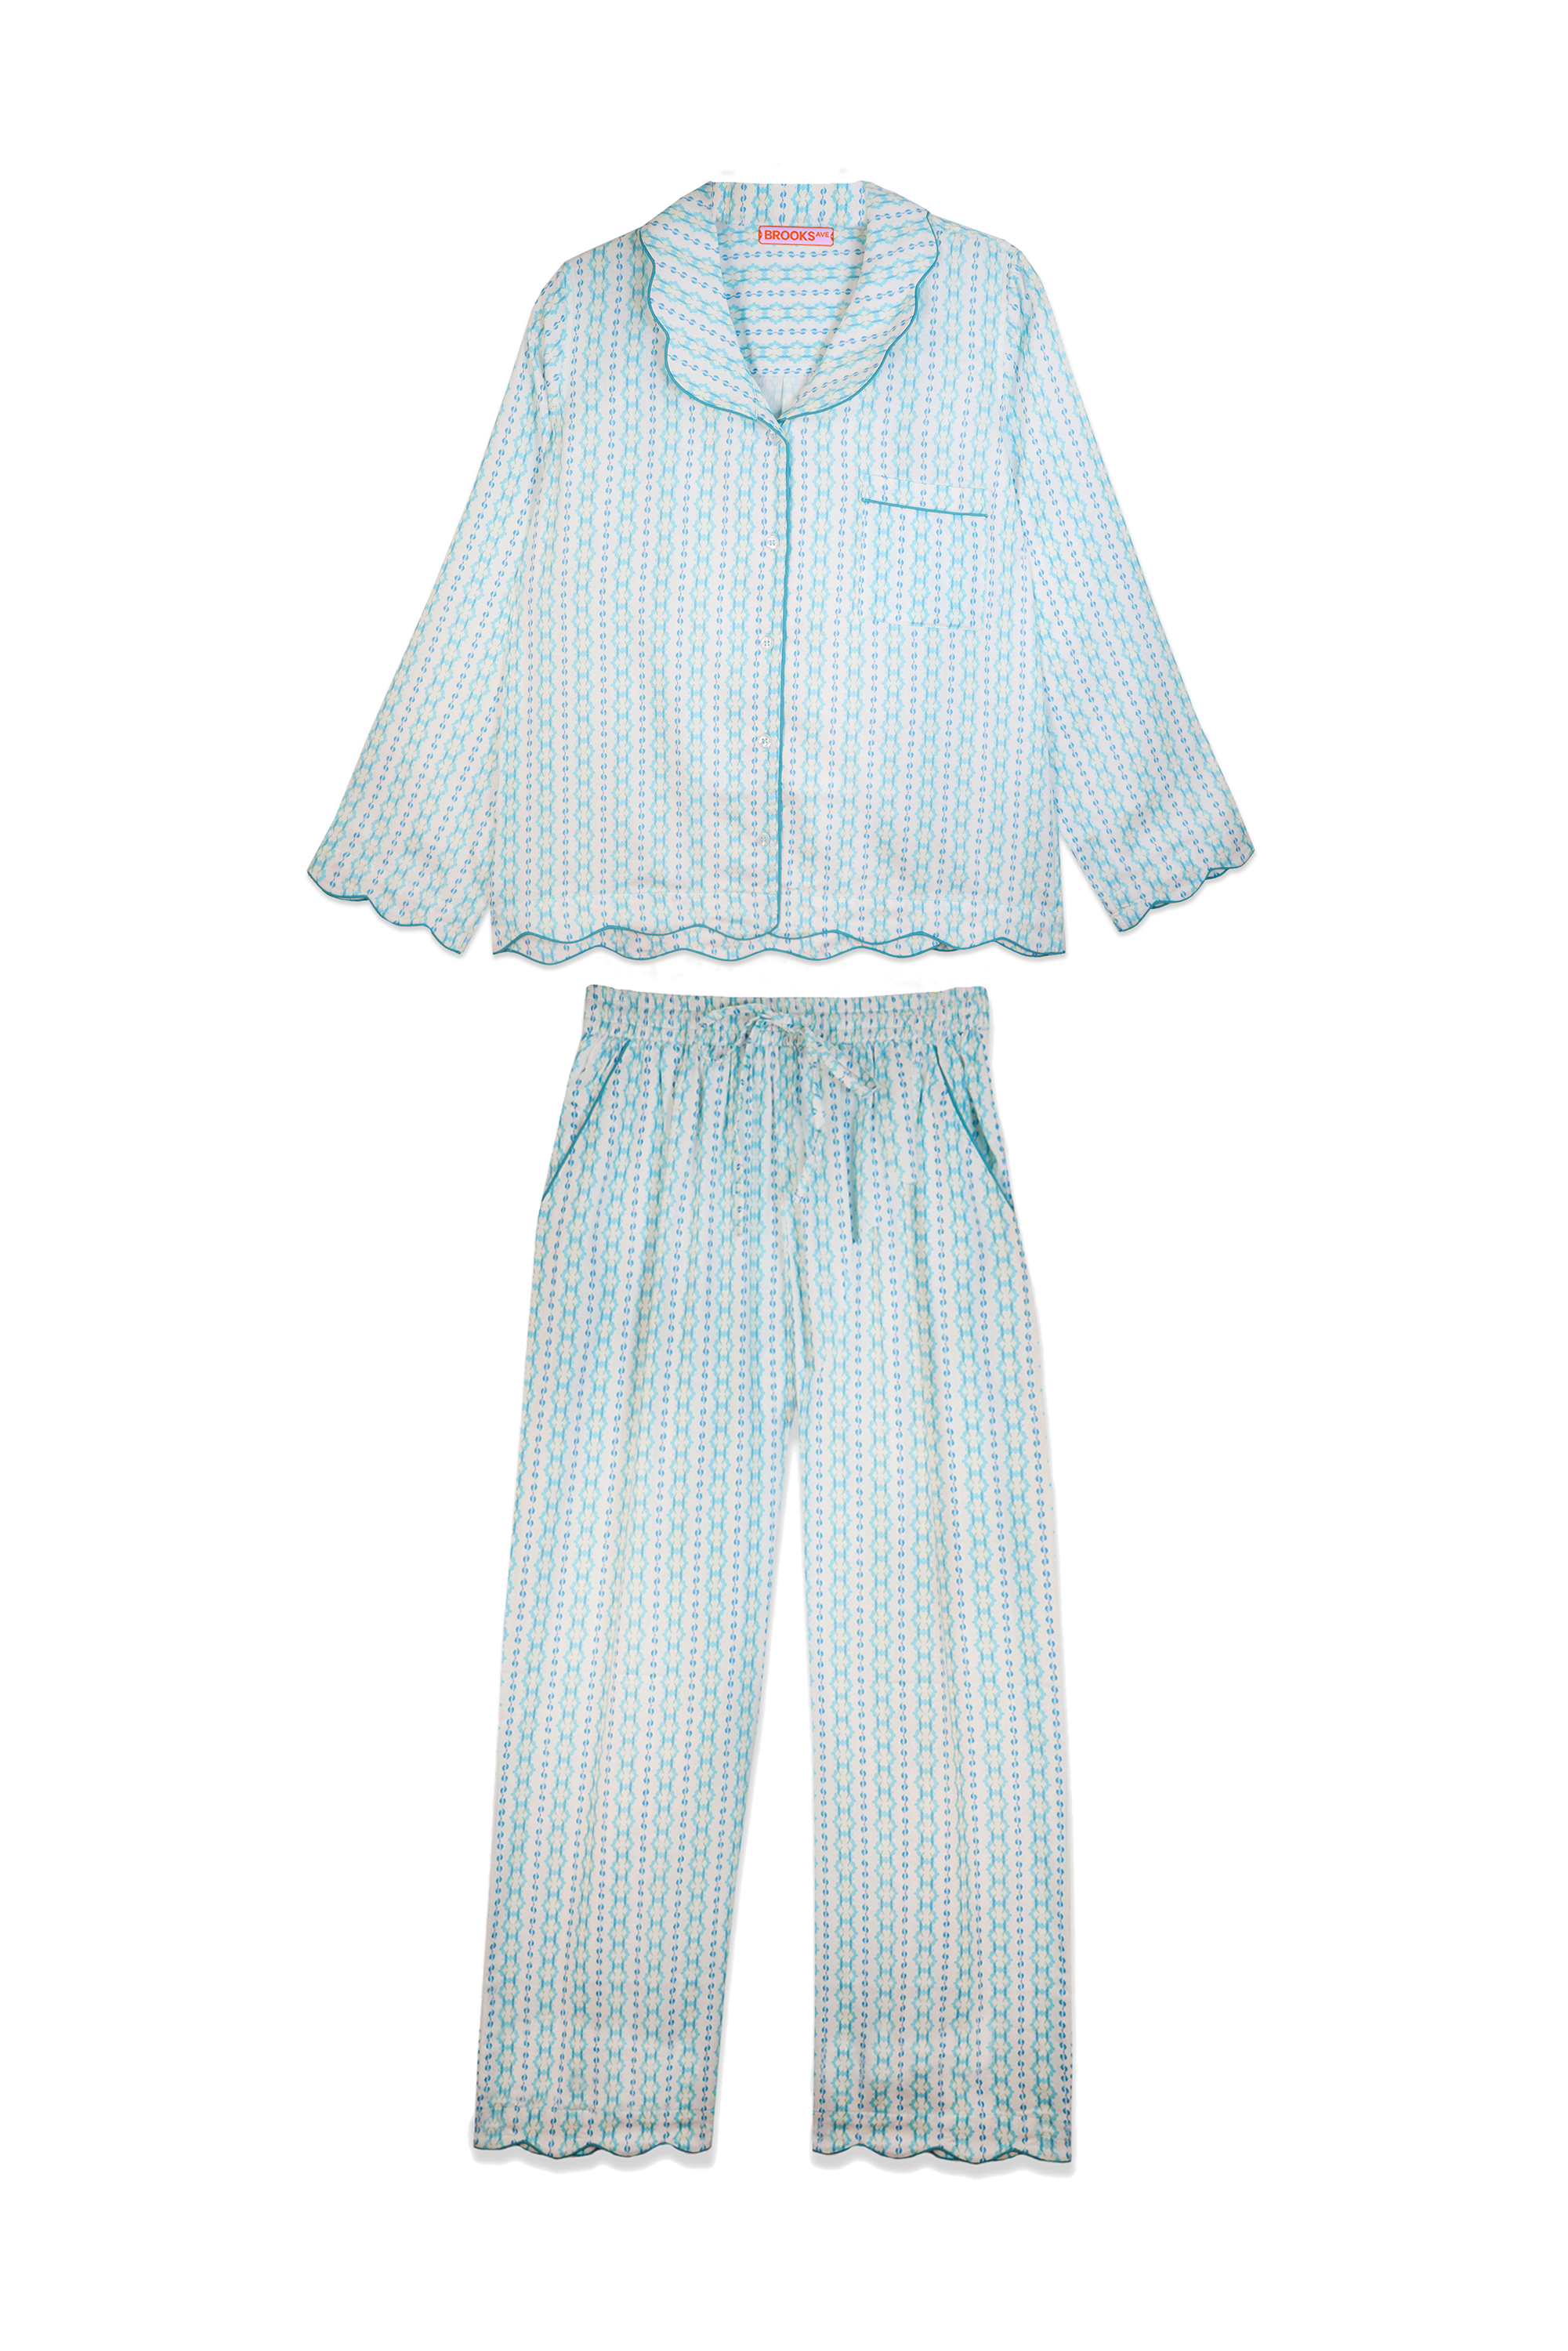 Scalloped Pajama Set Long - Blue Moss